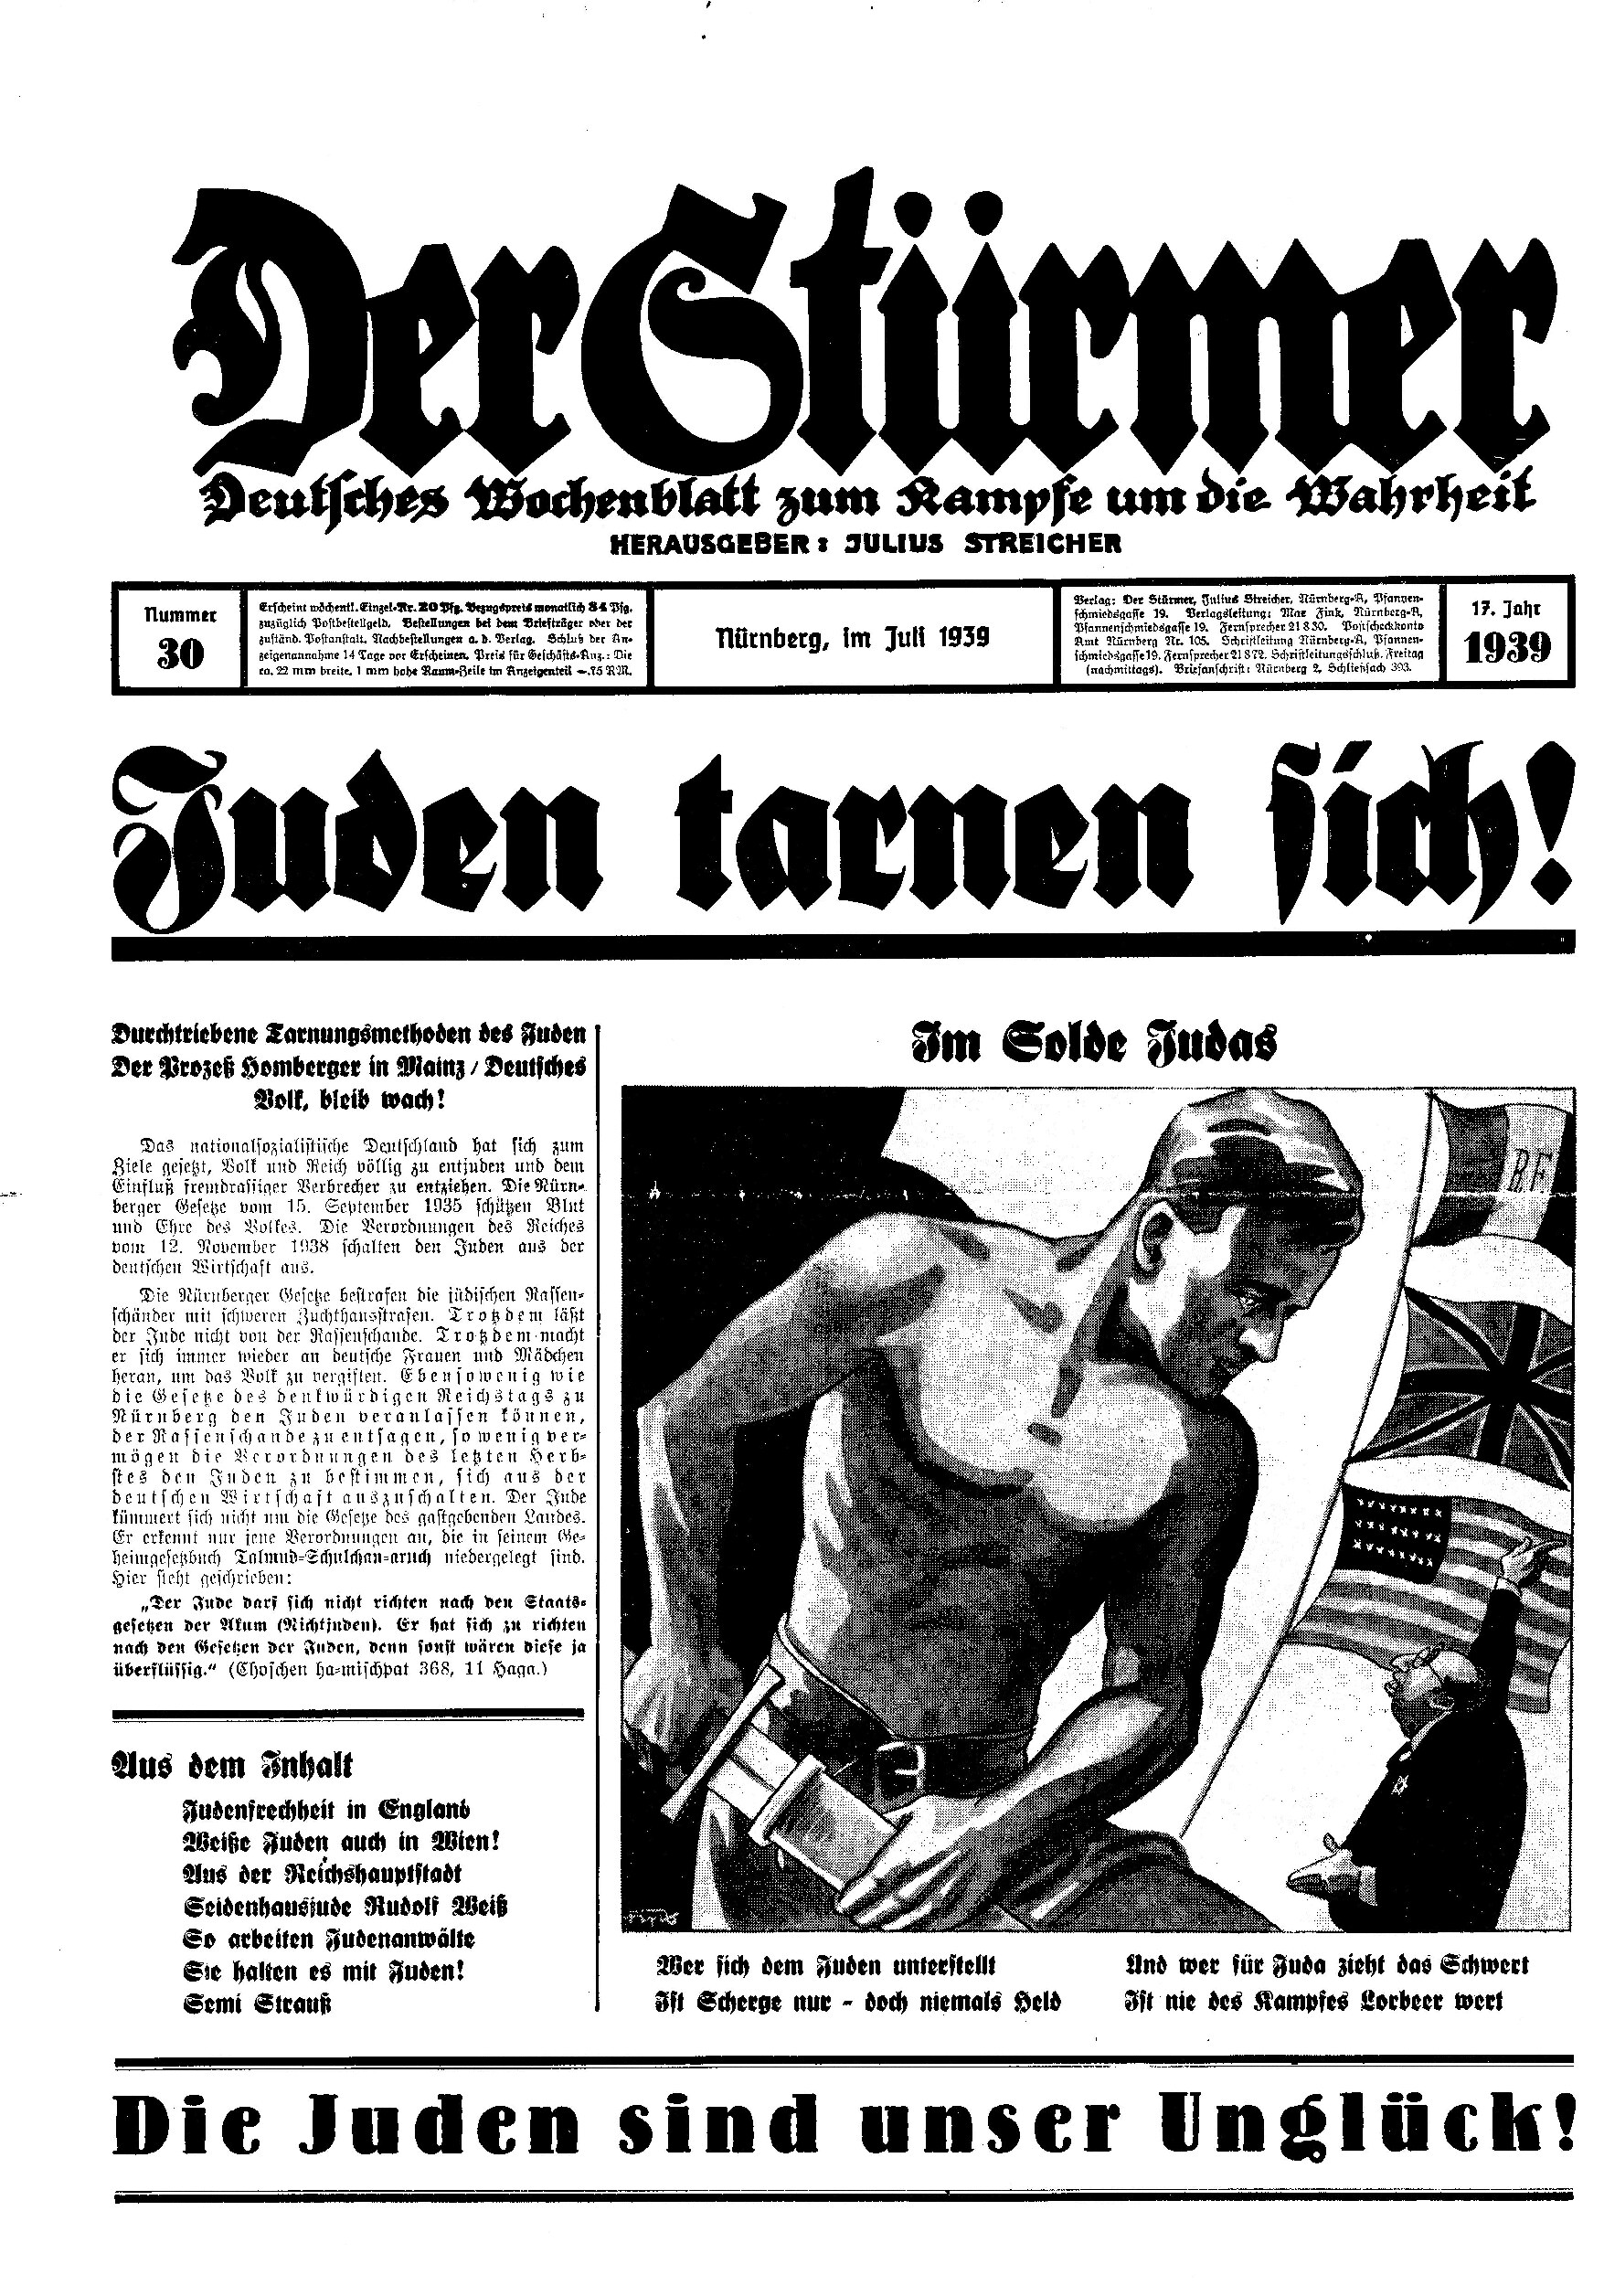 Der Stürmer - 1939 Nr. 30 - Juden tarnen sich!